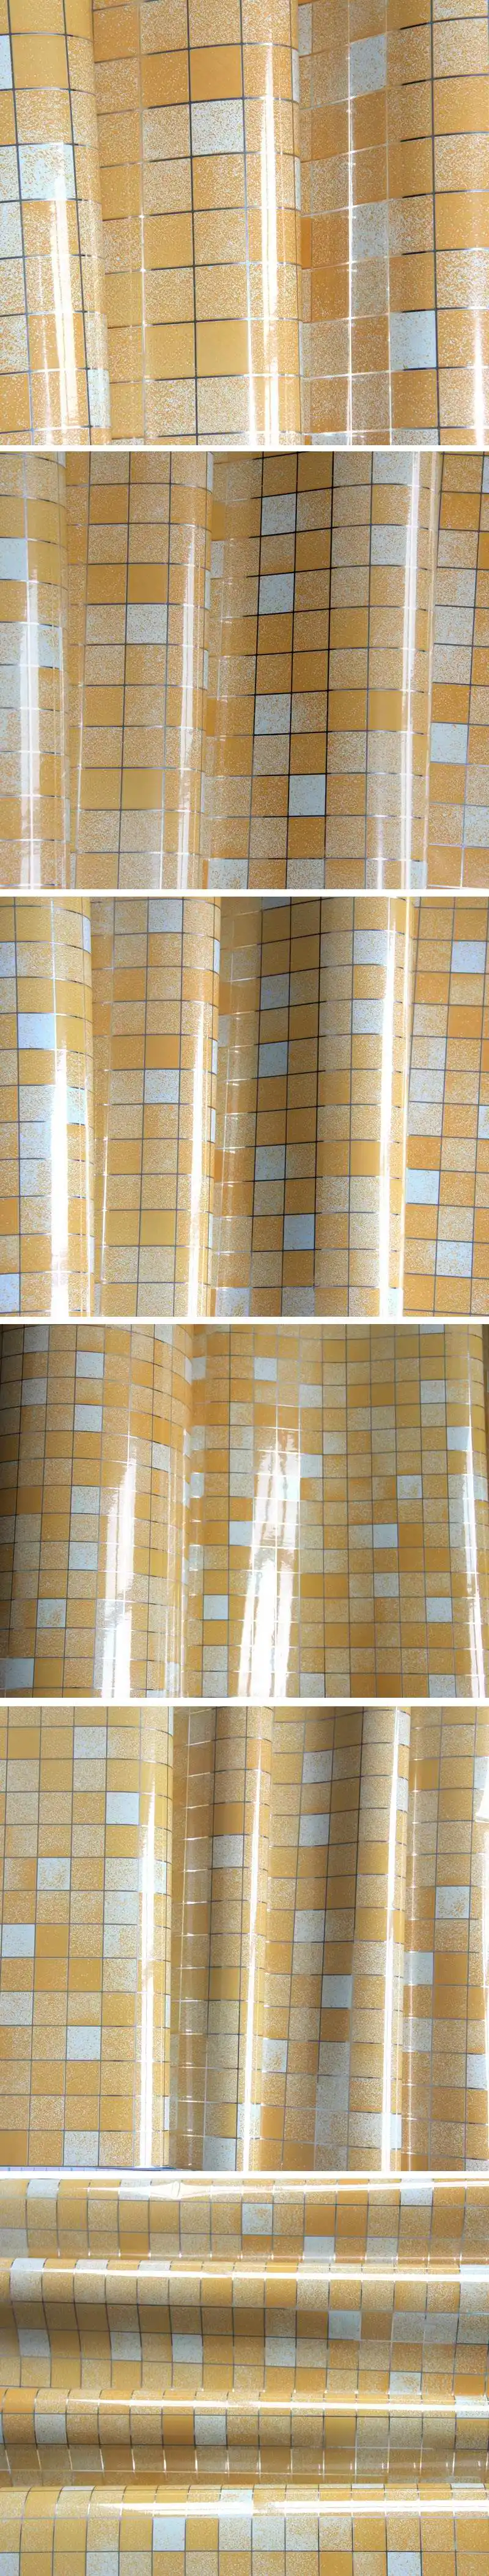 10 метров Алюминий Фольга самоклеющаяся мозаика Наклейки Кухня анти нефти обои высокого Температура винил Водонепроницаемый стены Стикеры